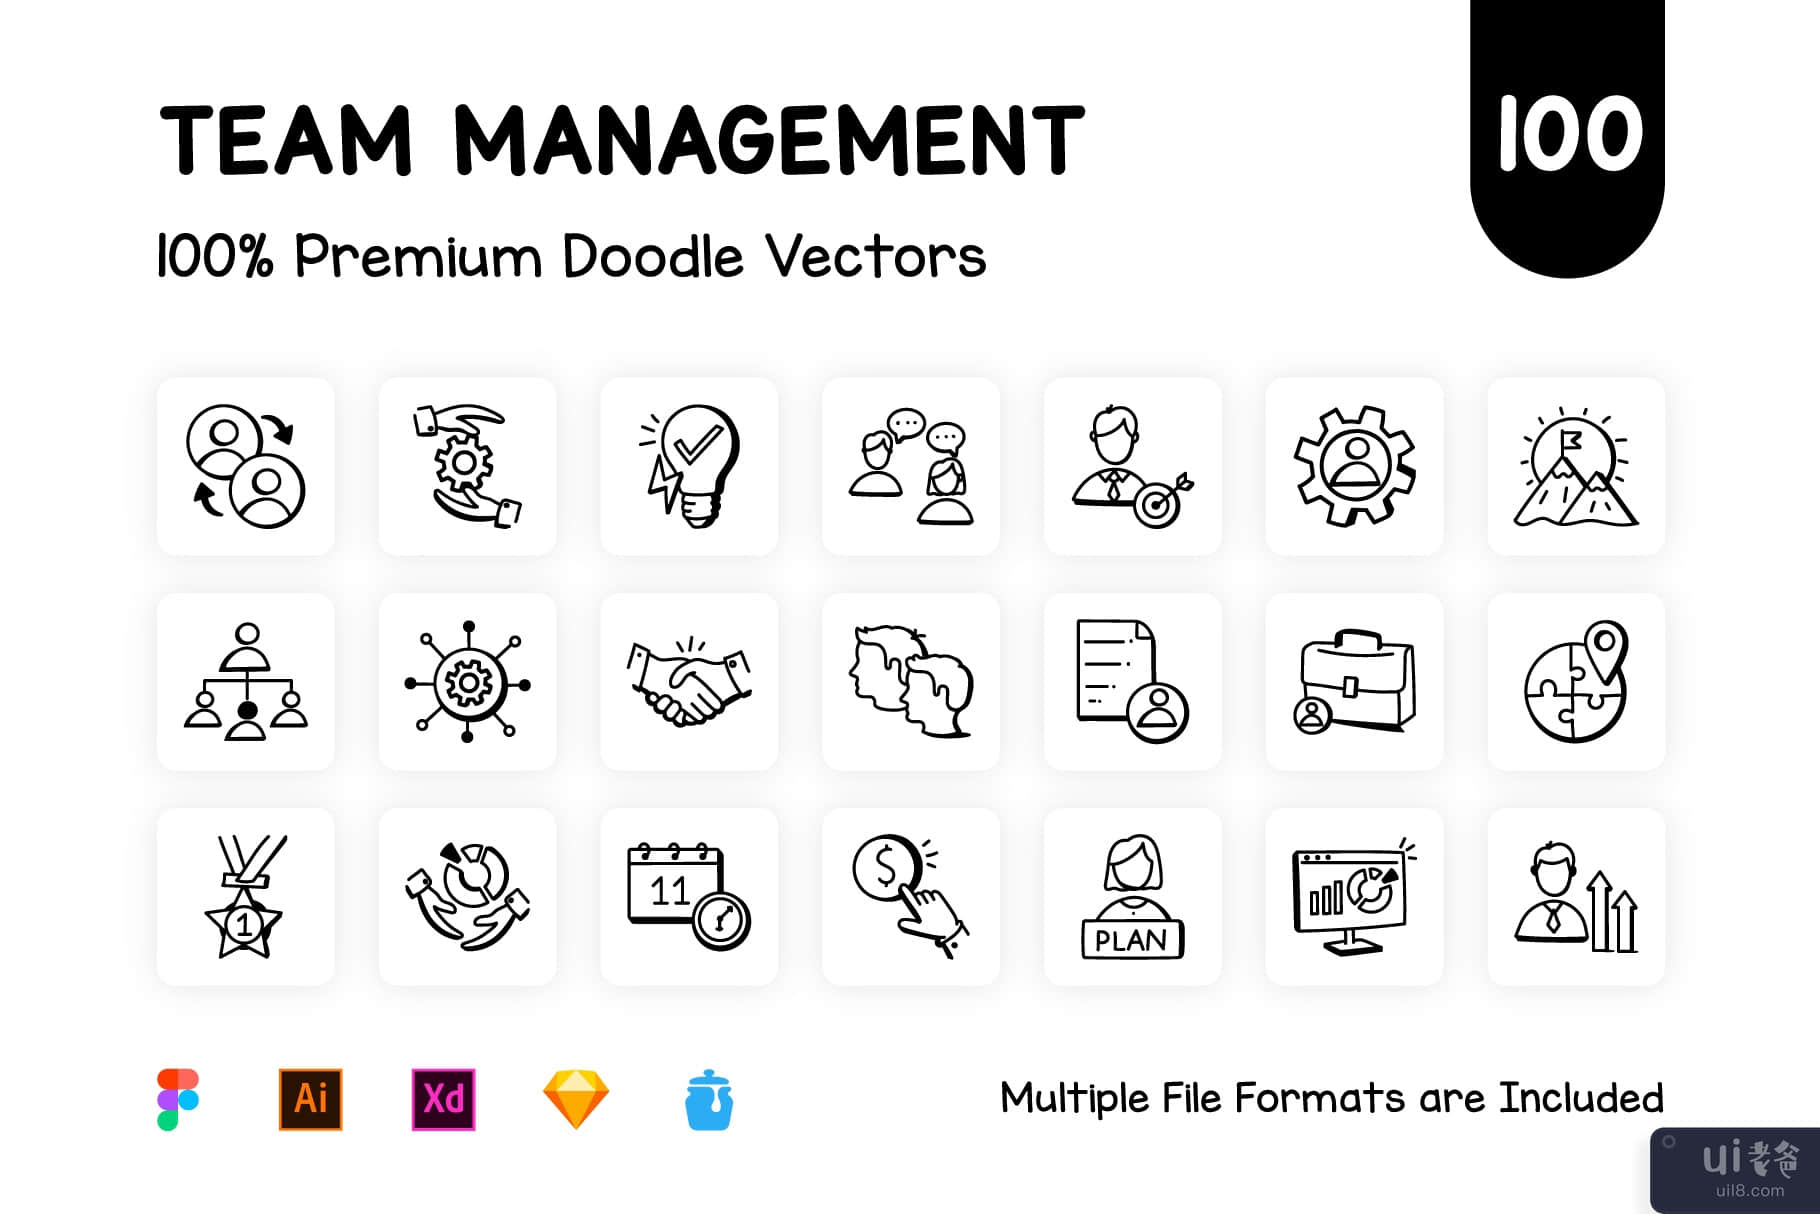 100 个管理团队图标矢量图(100 Management Team Icon Vectors)插图9